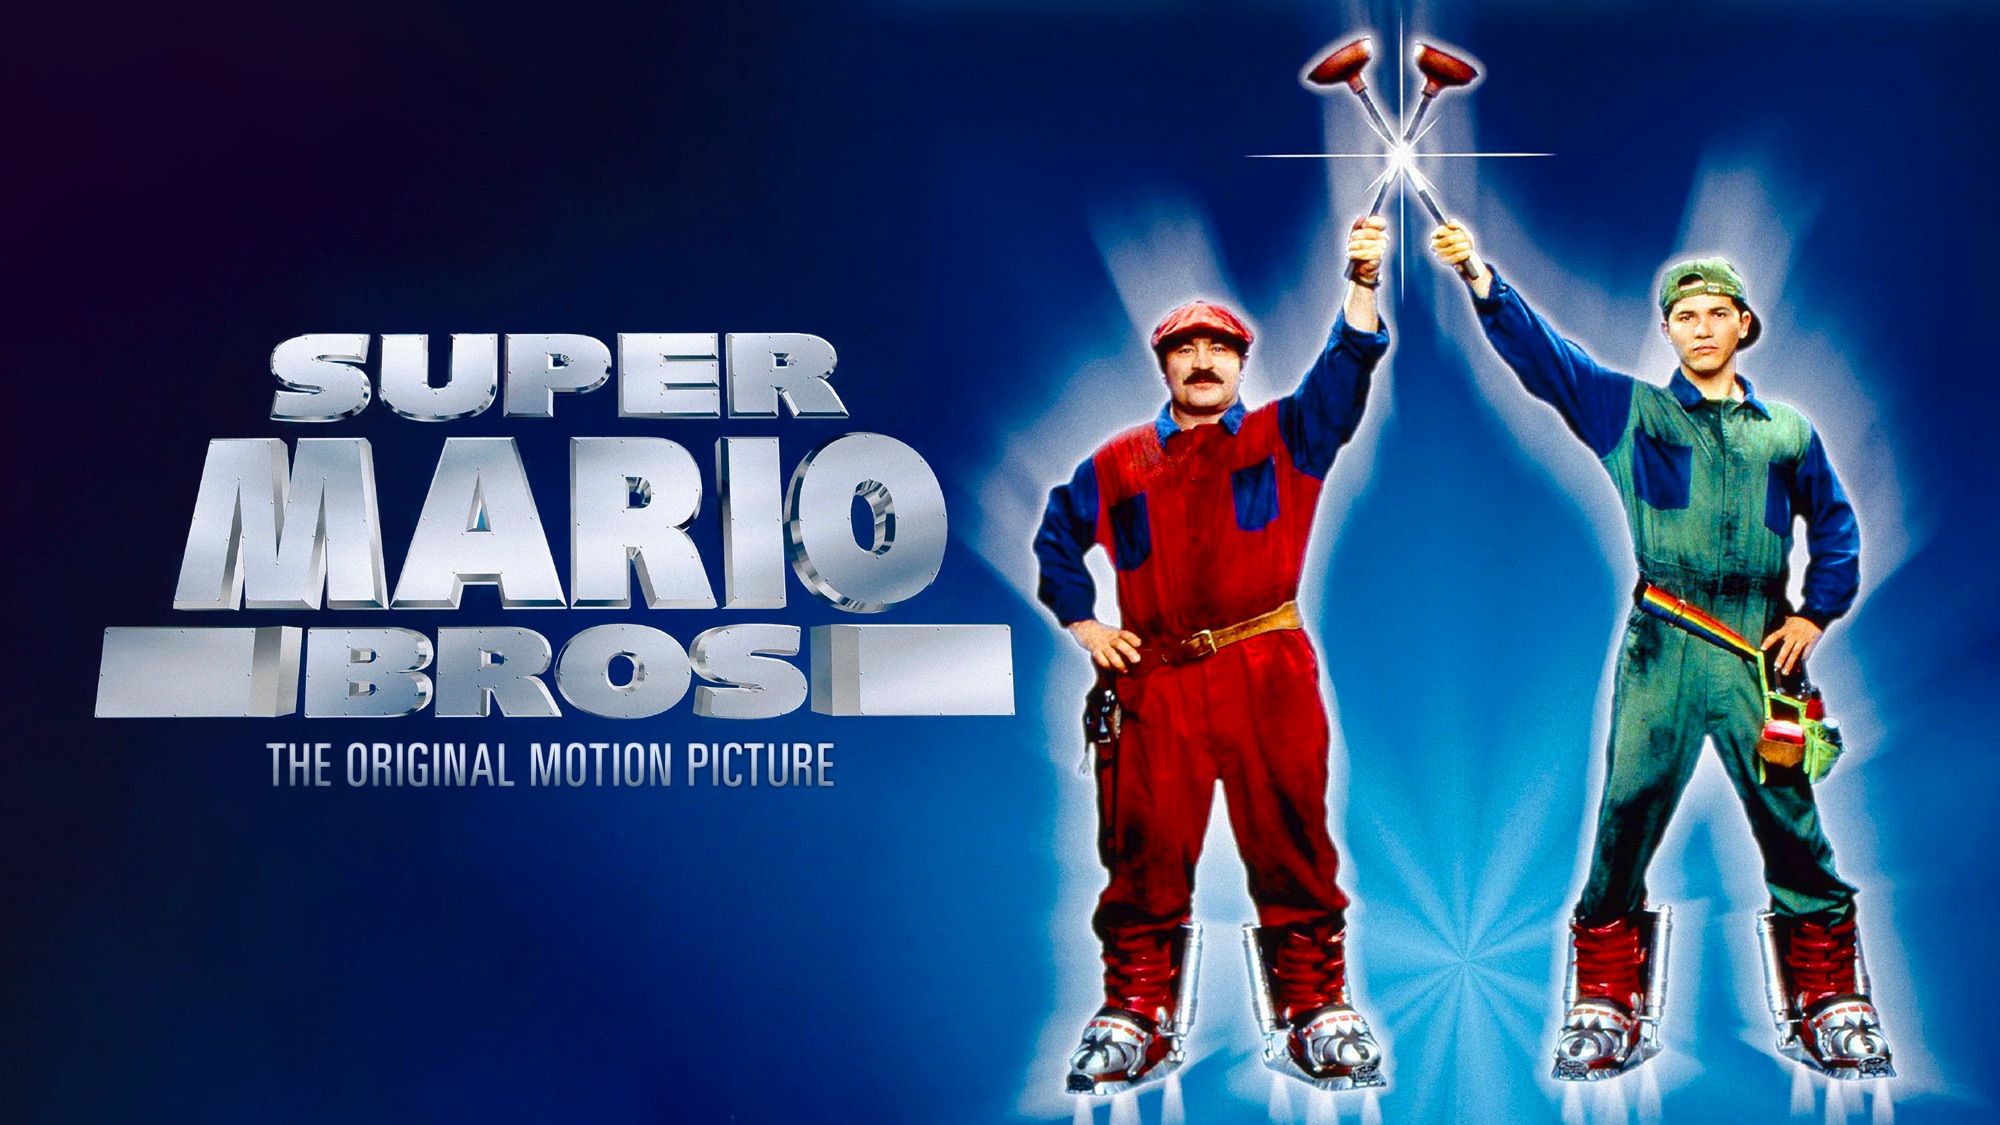 Скачать обои Супербратья Марио на телефон бесплатно